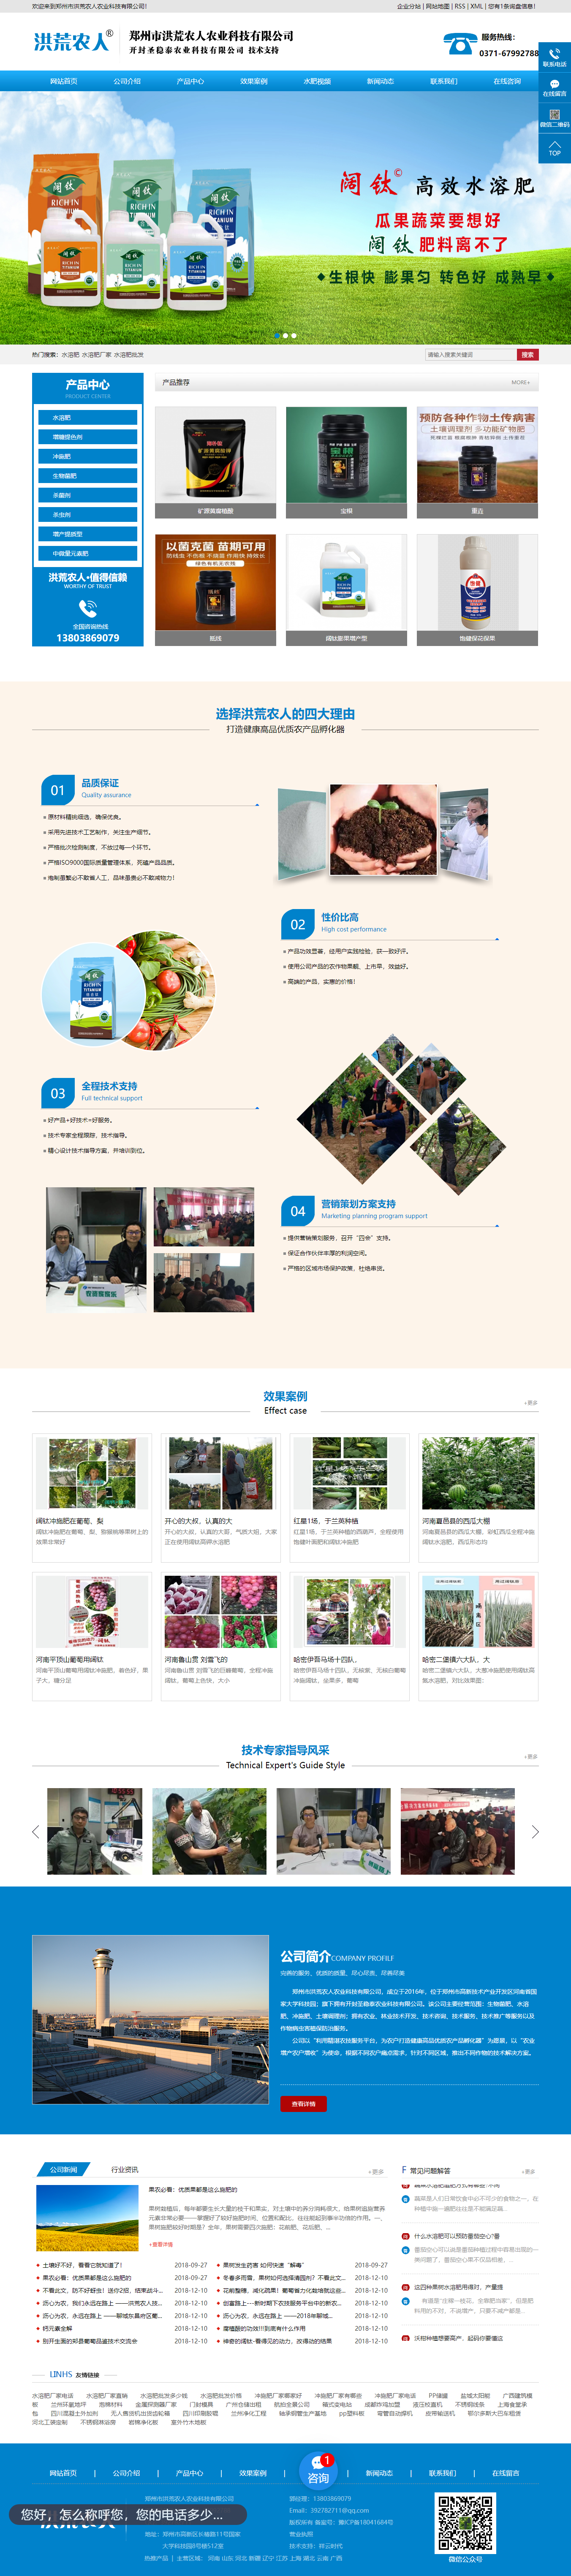 郑州市洪荒农人农业科技有限公司网站案例